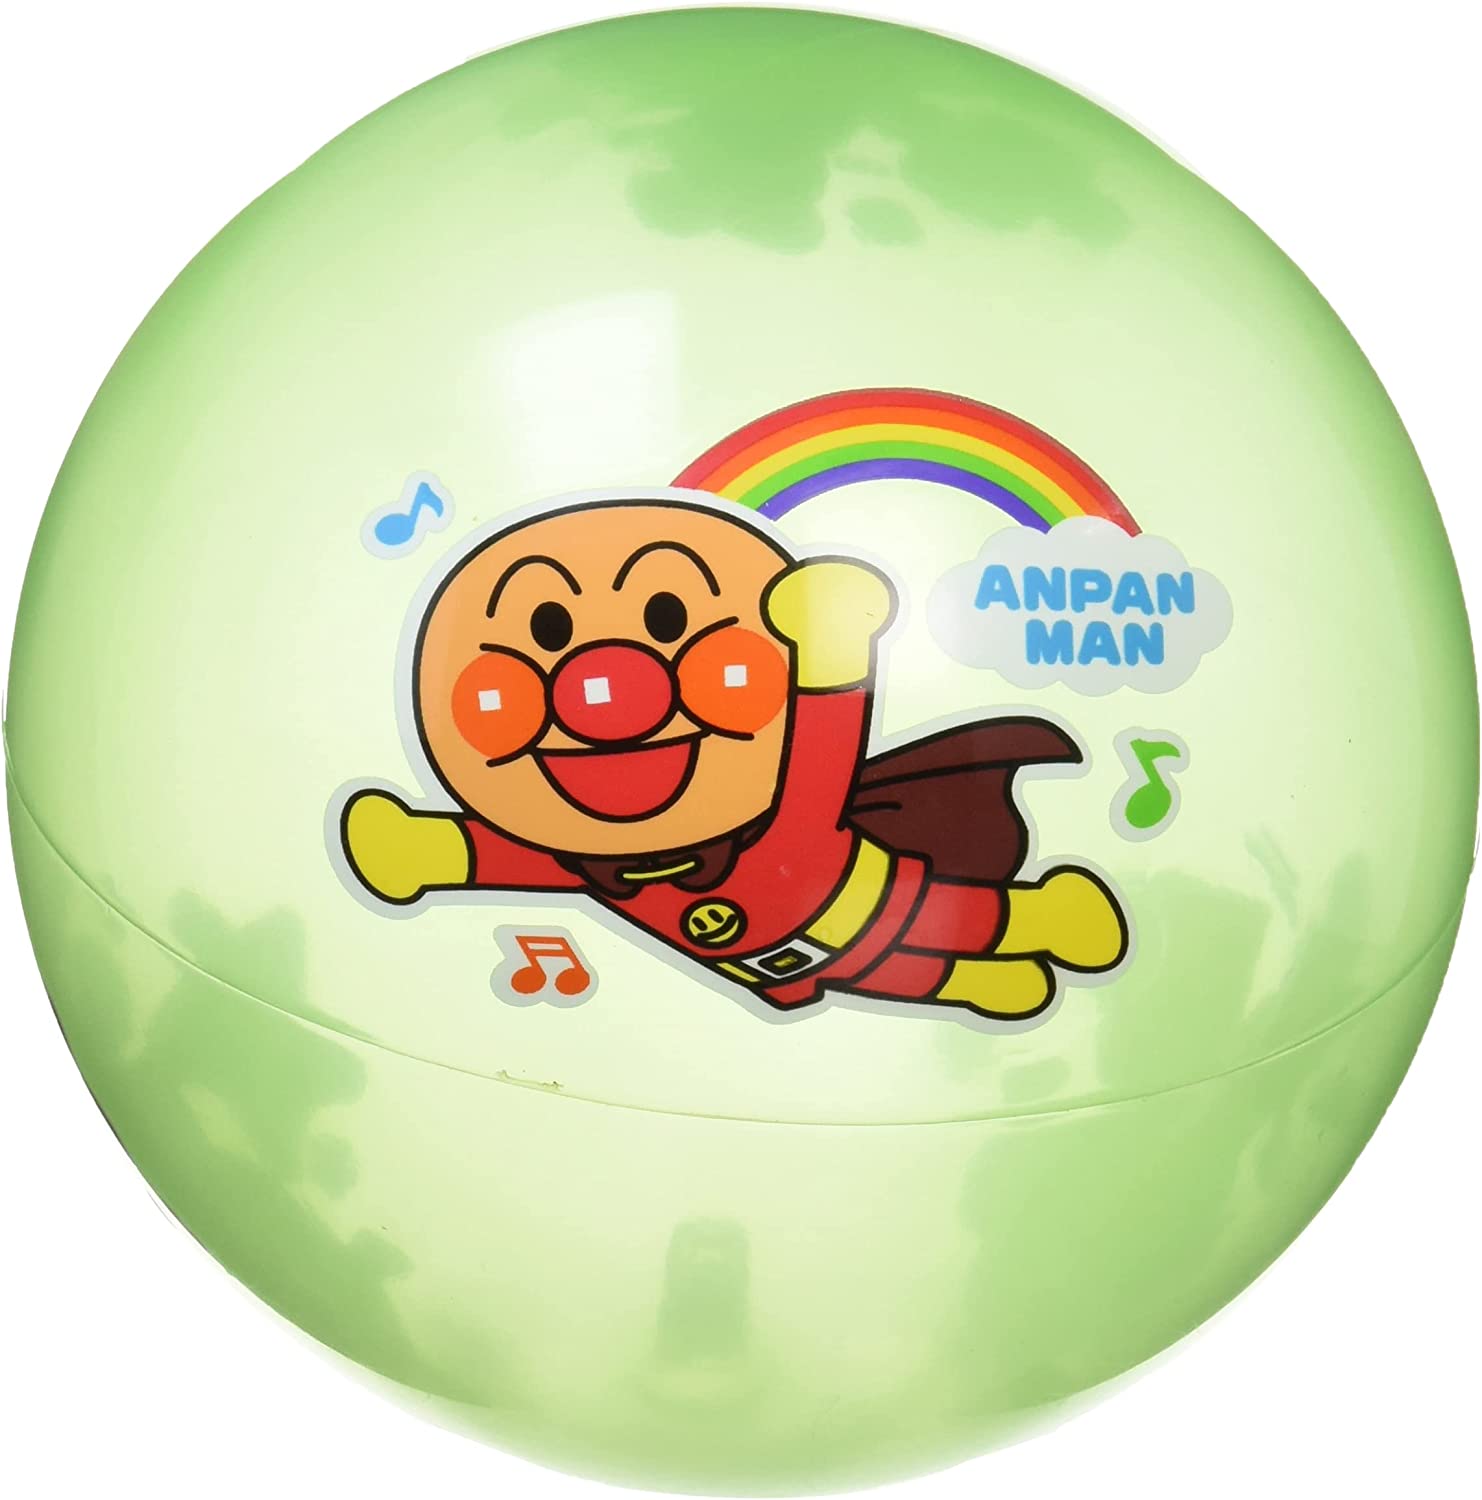 商品紹介 アンパンマンのキャラクターがデザインされた色つきボール。定番のロングセラー商品です。デザインが1か所から2か所に増え新しくなりました。ボール専用の空気入れで空気を挿入できます。